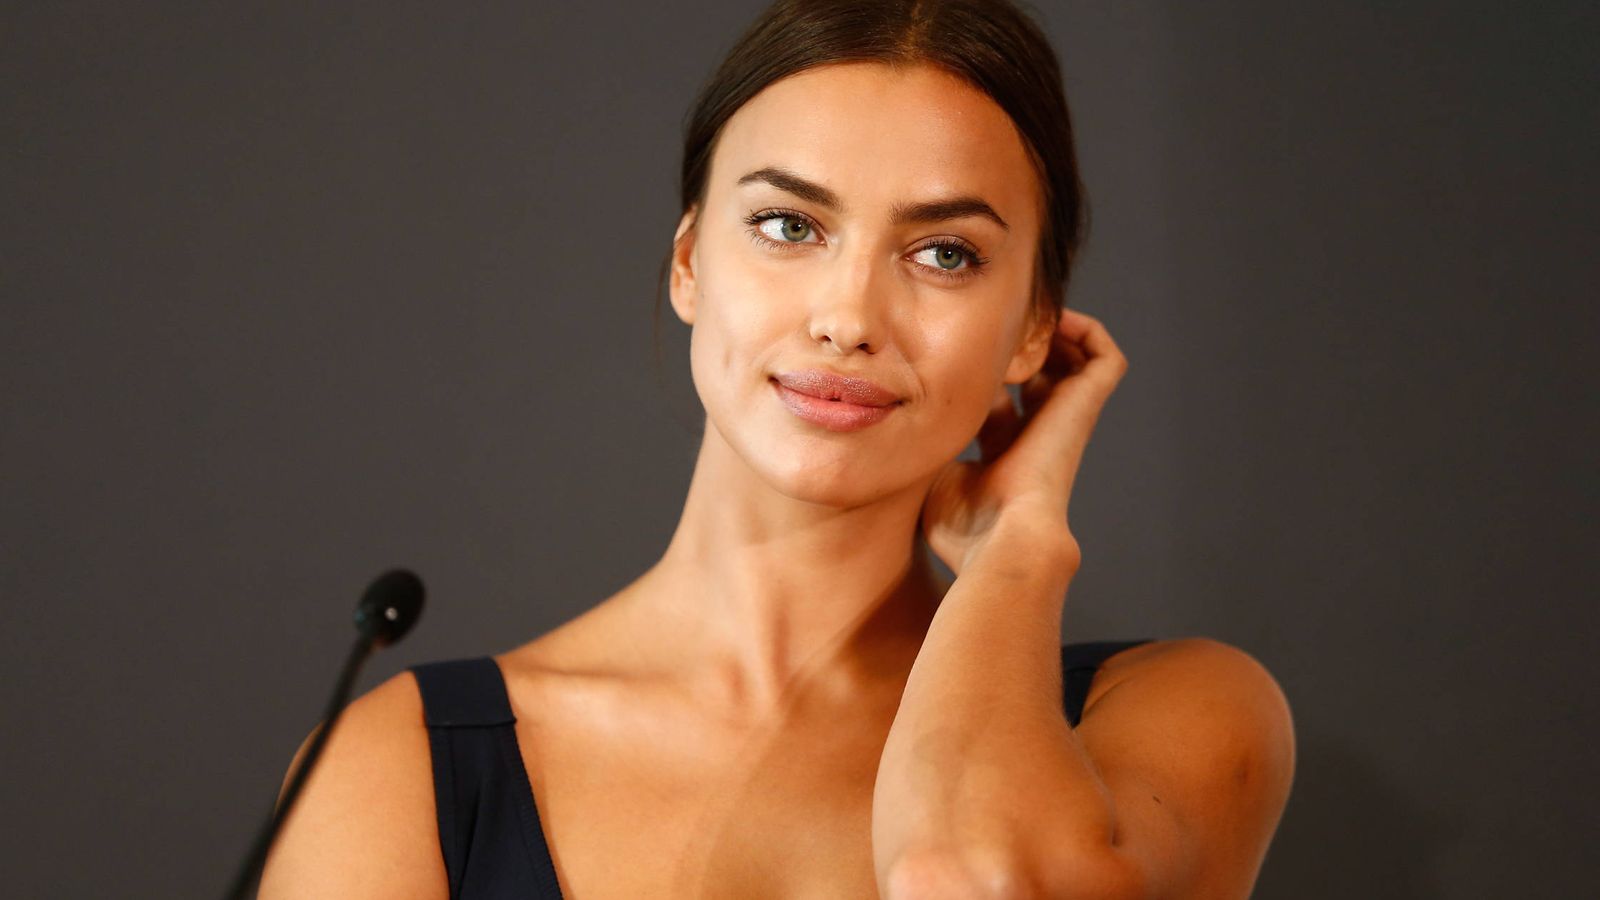 Foto: La modelo Irina Shayk durante una rueda de prensa el pasado mes de agosto. (Getty Images)